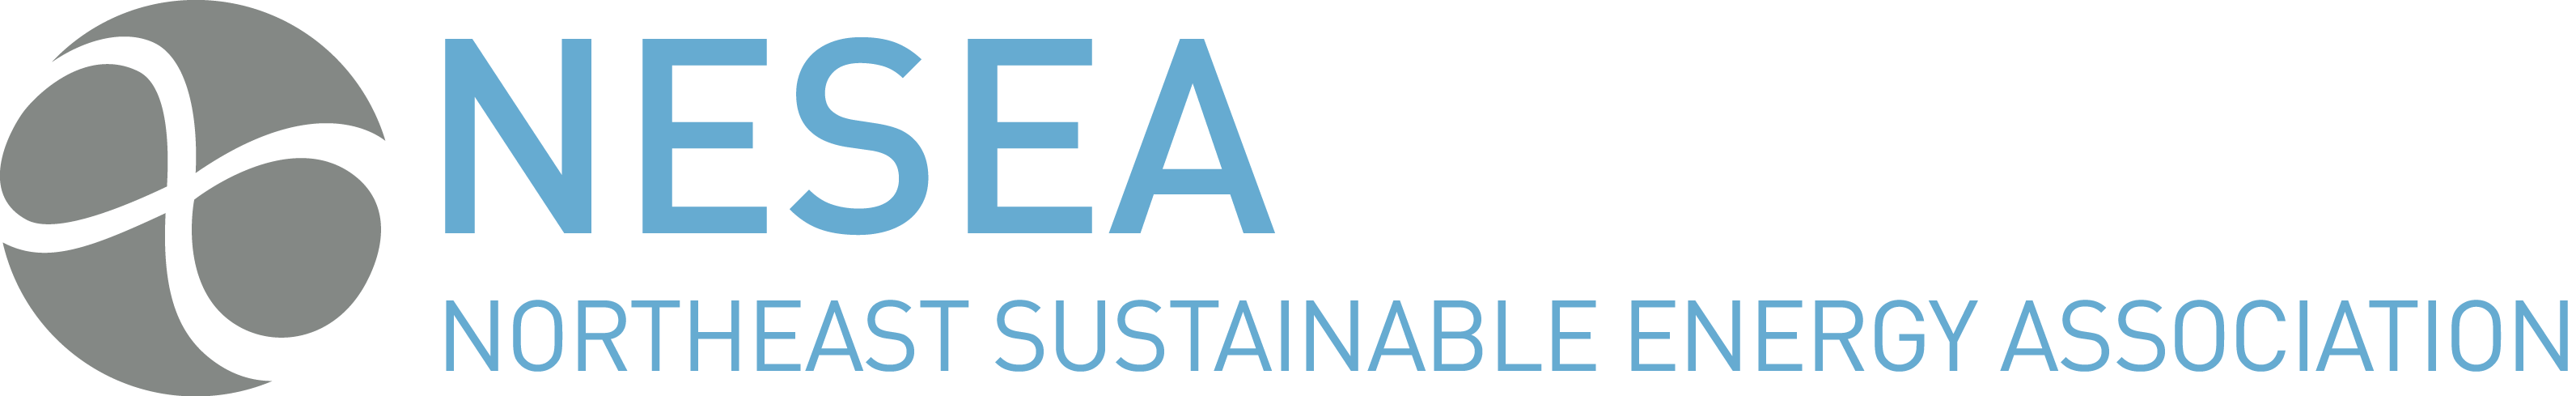 Northeast Sustainable Energy Association (NESEA)